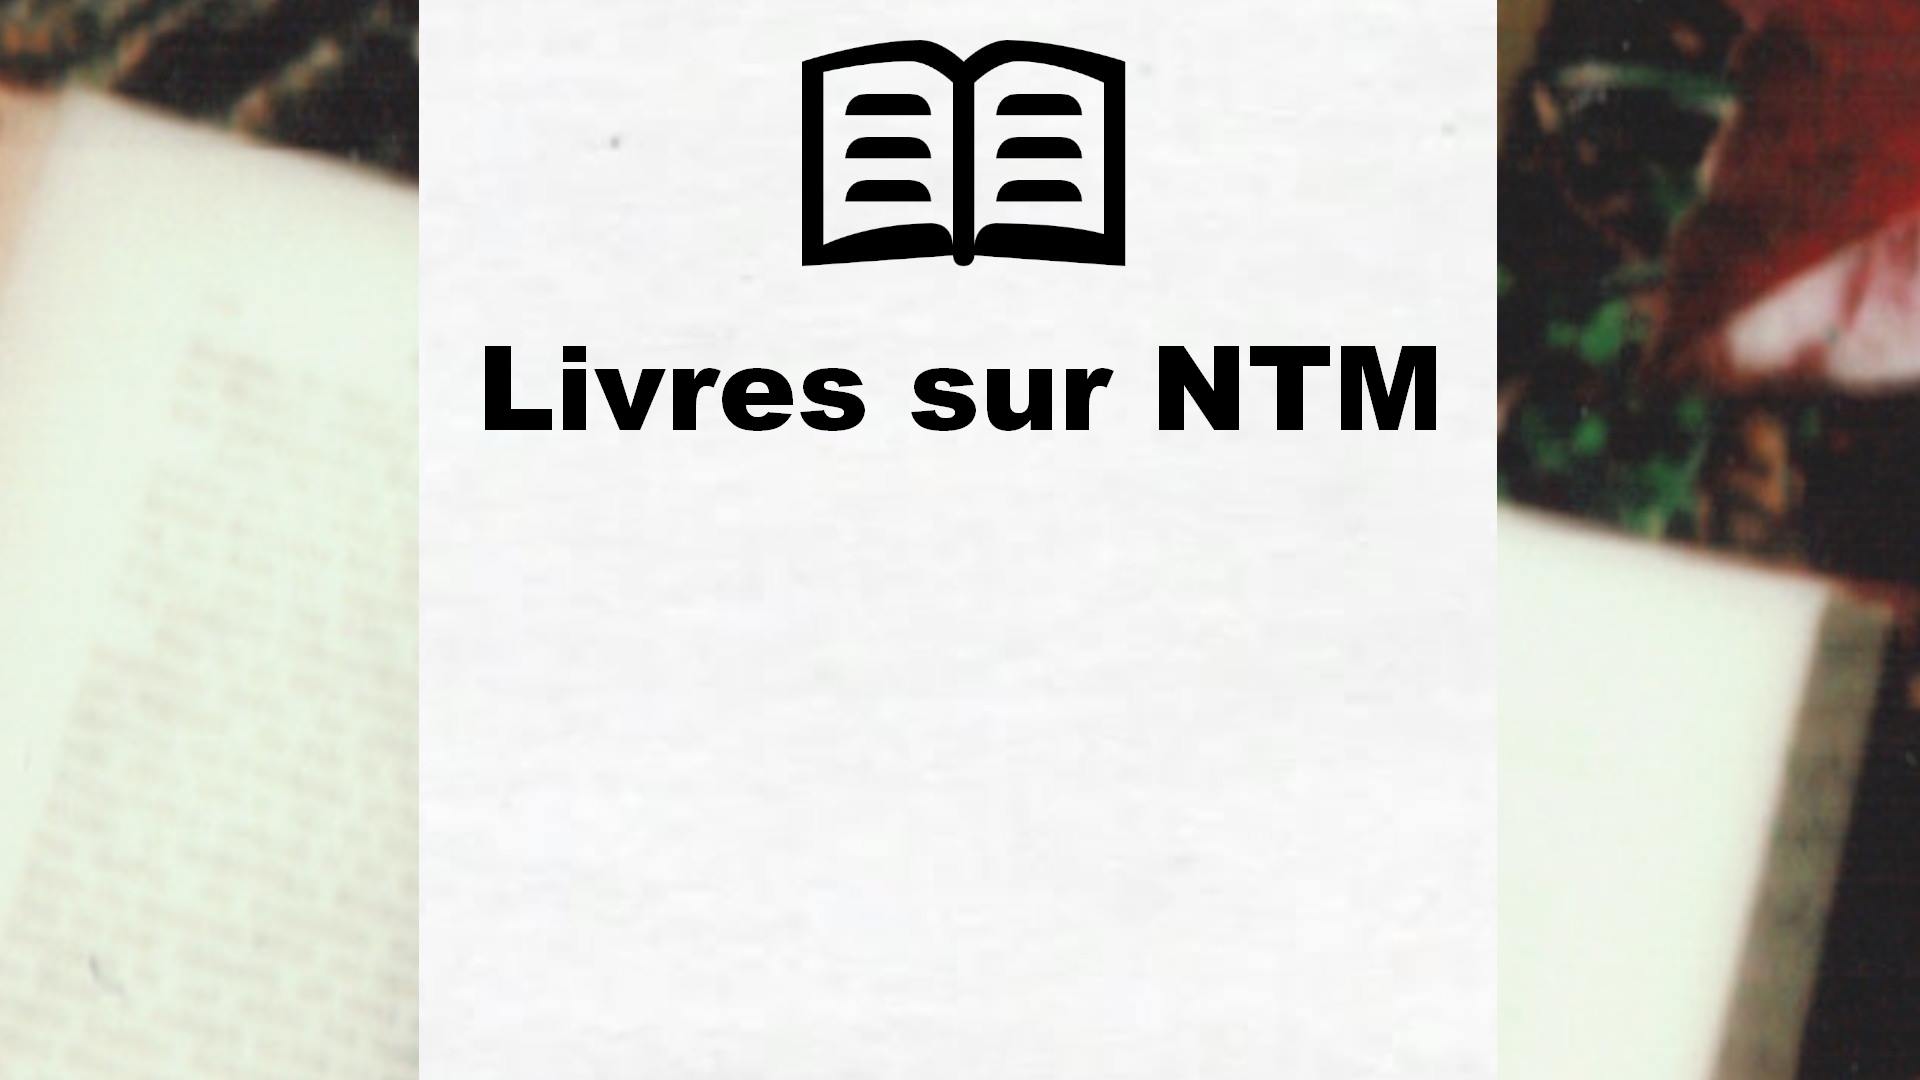 Livres sur NTM